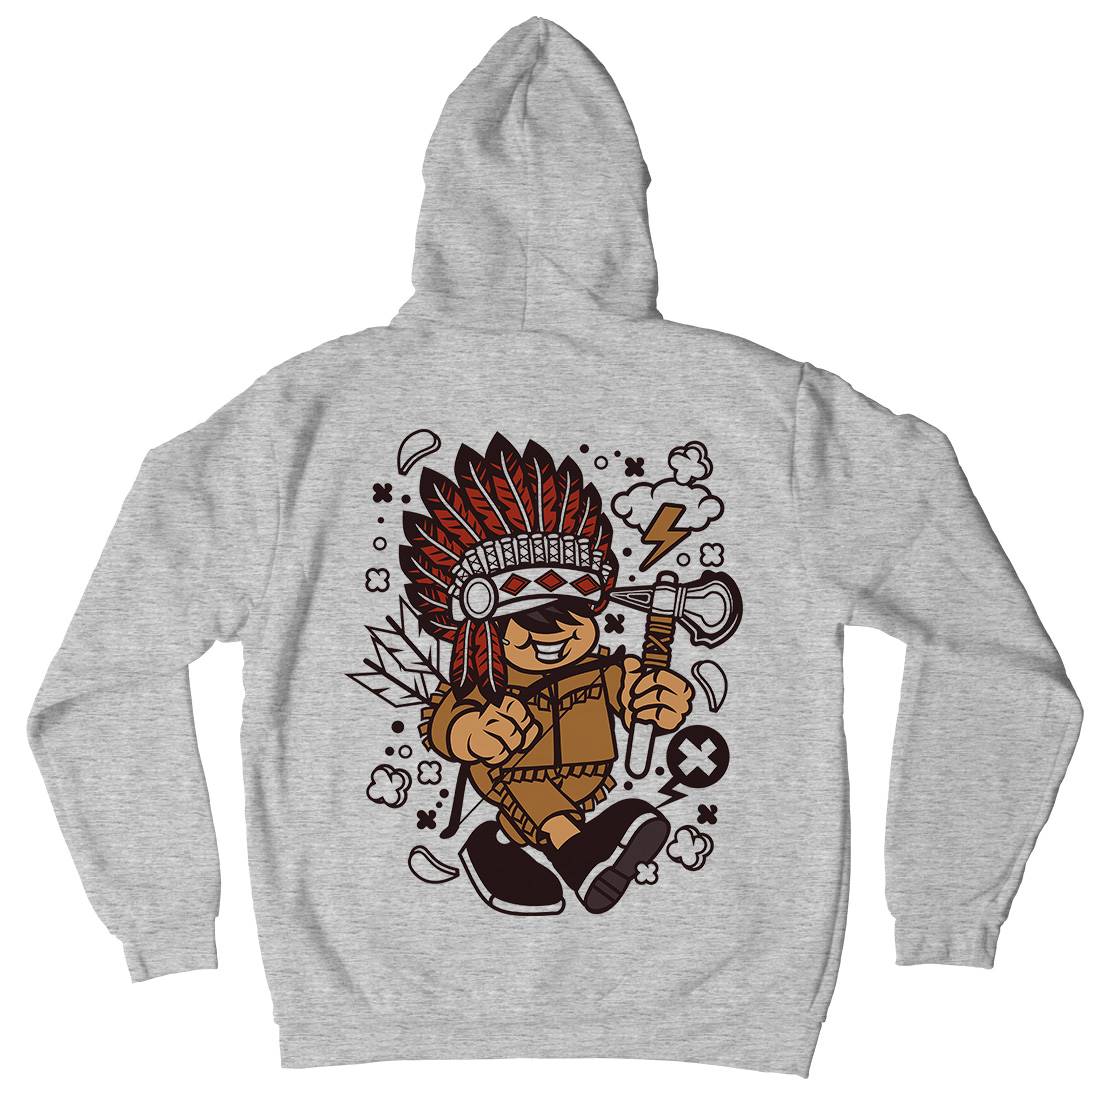 Indian Chief Kid Kids Crew Neck Hoodie American C152